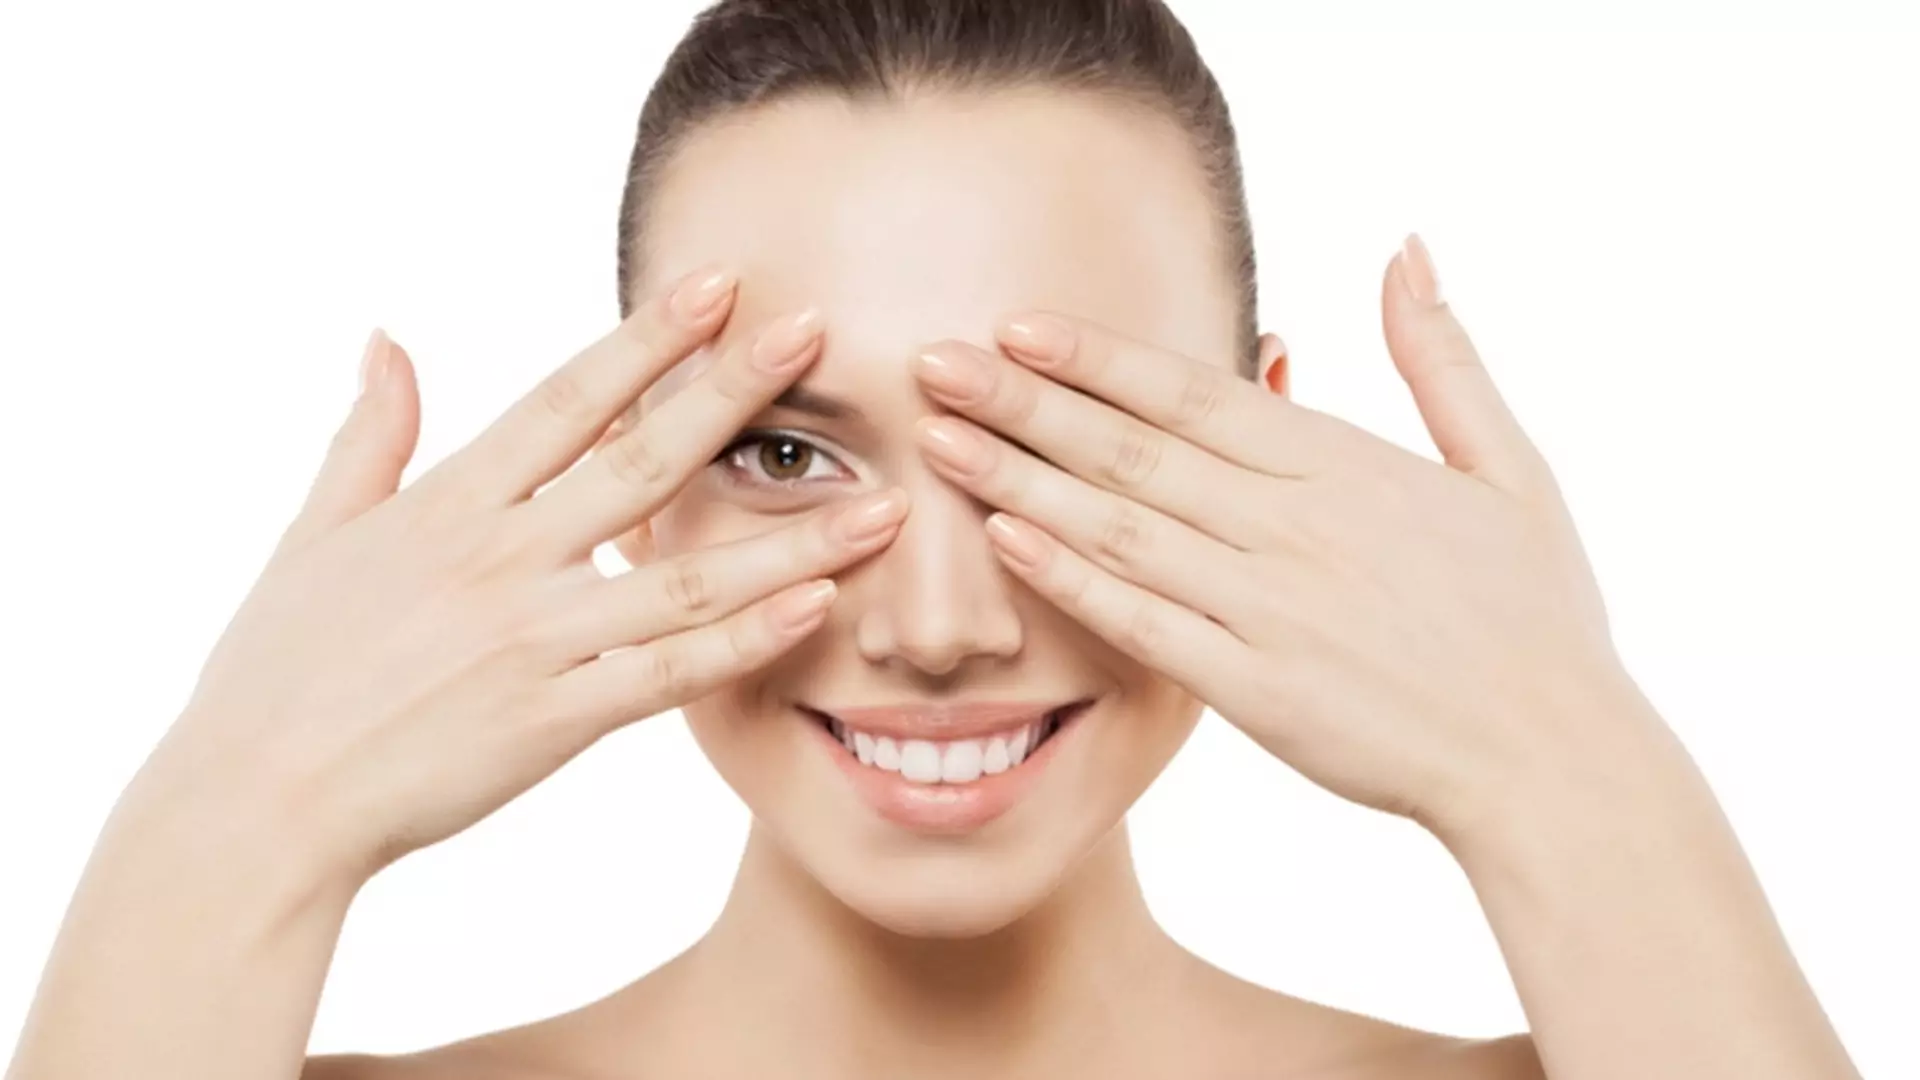 Jak leczyć jęczmień na oku? Najlepsze domowe sposoby